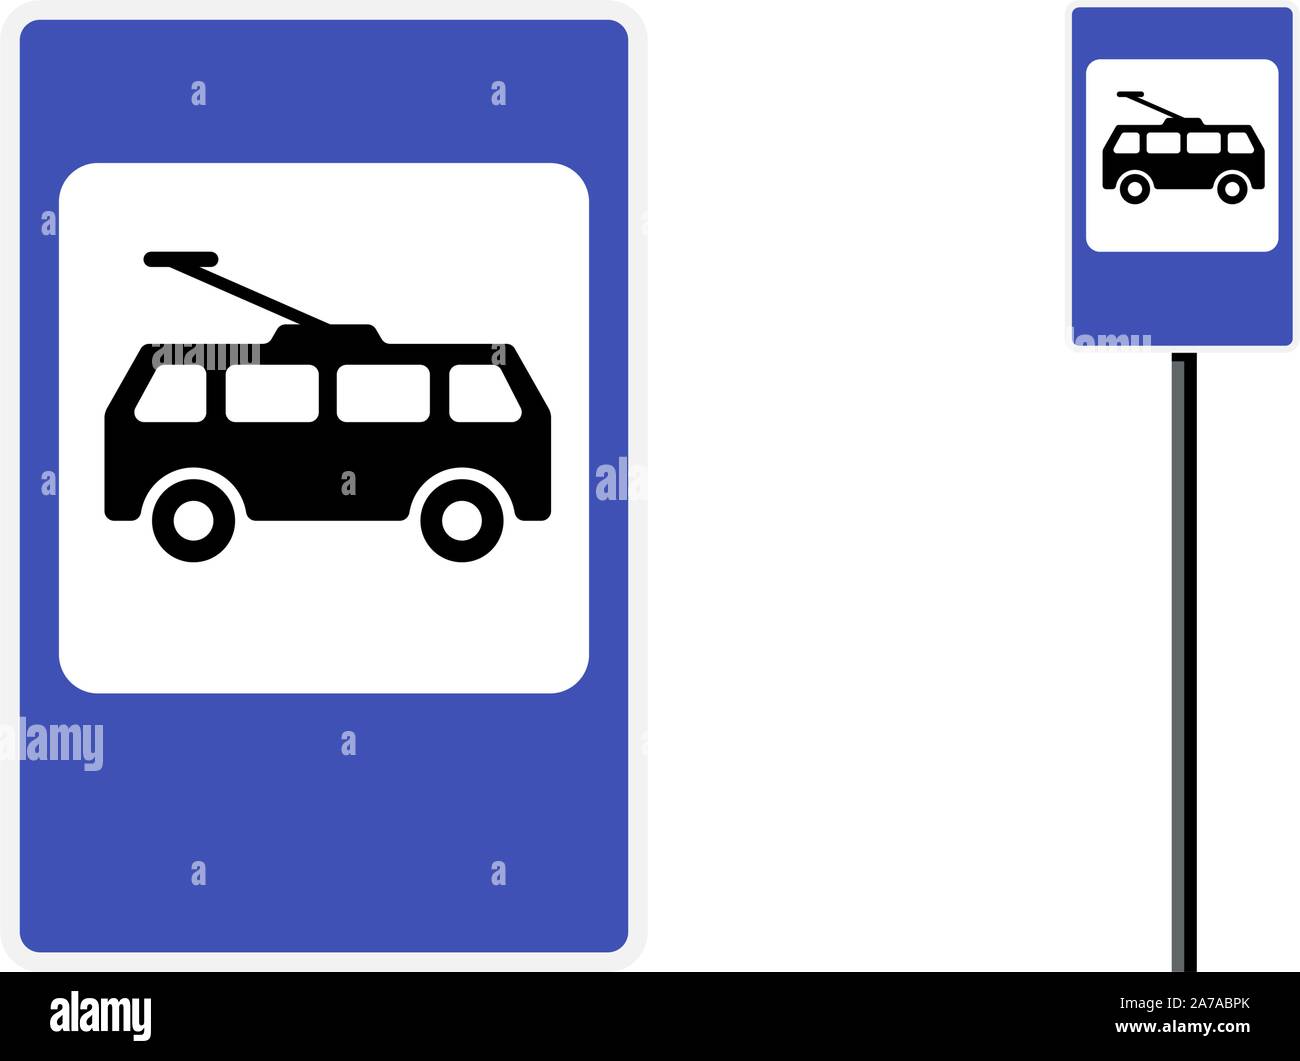 Trolley-Bushaltestelle Poststation Symbol flach Design. Blue City Road öffentlichen Verkehrsmitteln Zeichen gesetzt. Elektrische Obus isoliert Vektor Symbol Illustration auf weißem Hintergrund Stock Vektor